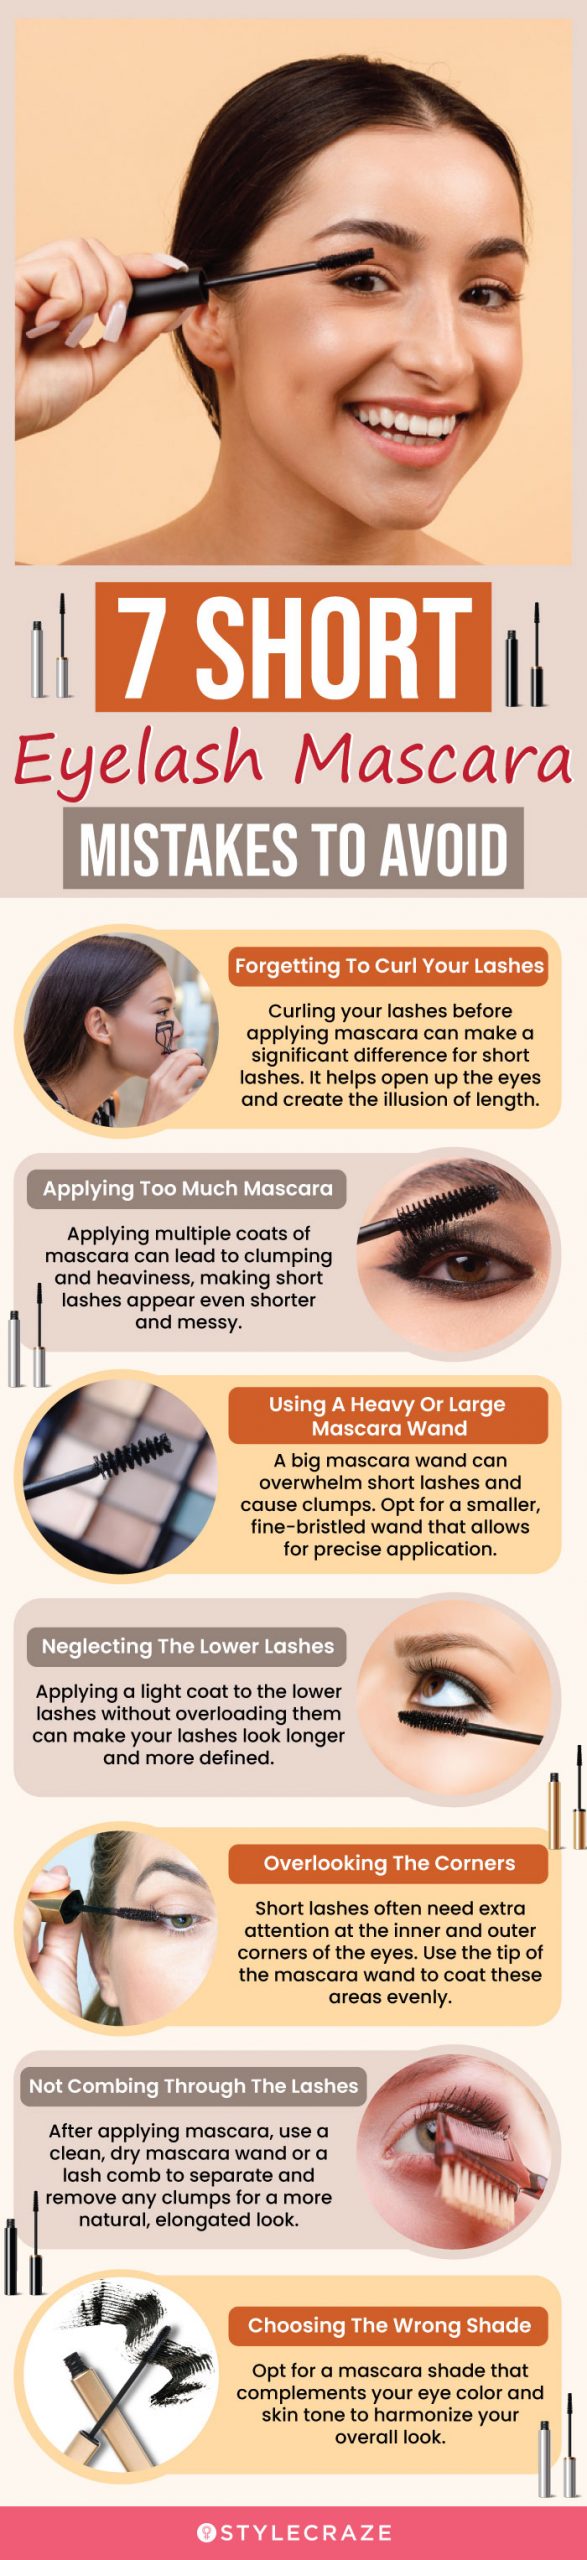 7 Short Eyelash Mascara Mistakes To Avoid (infographic)